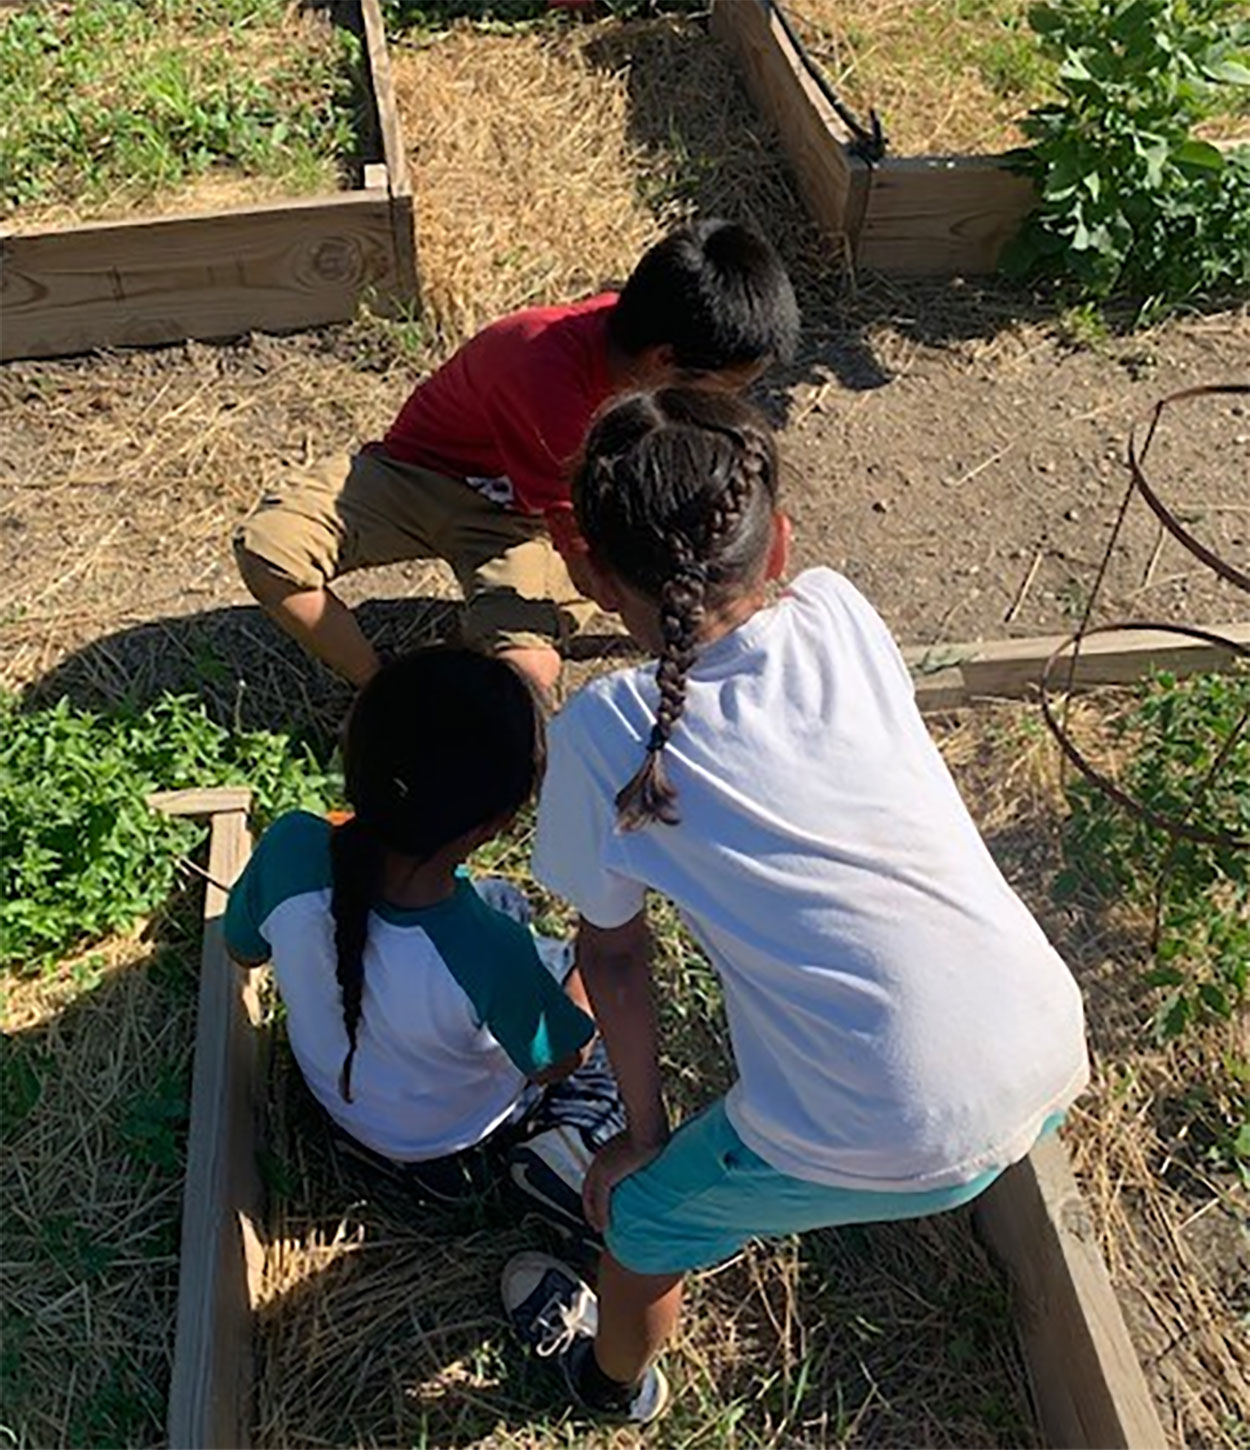 Three children working in a community garden.